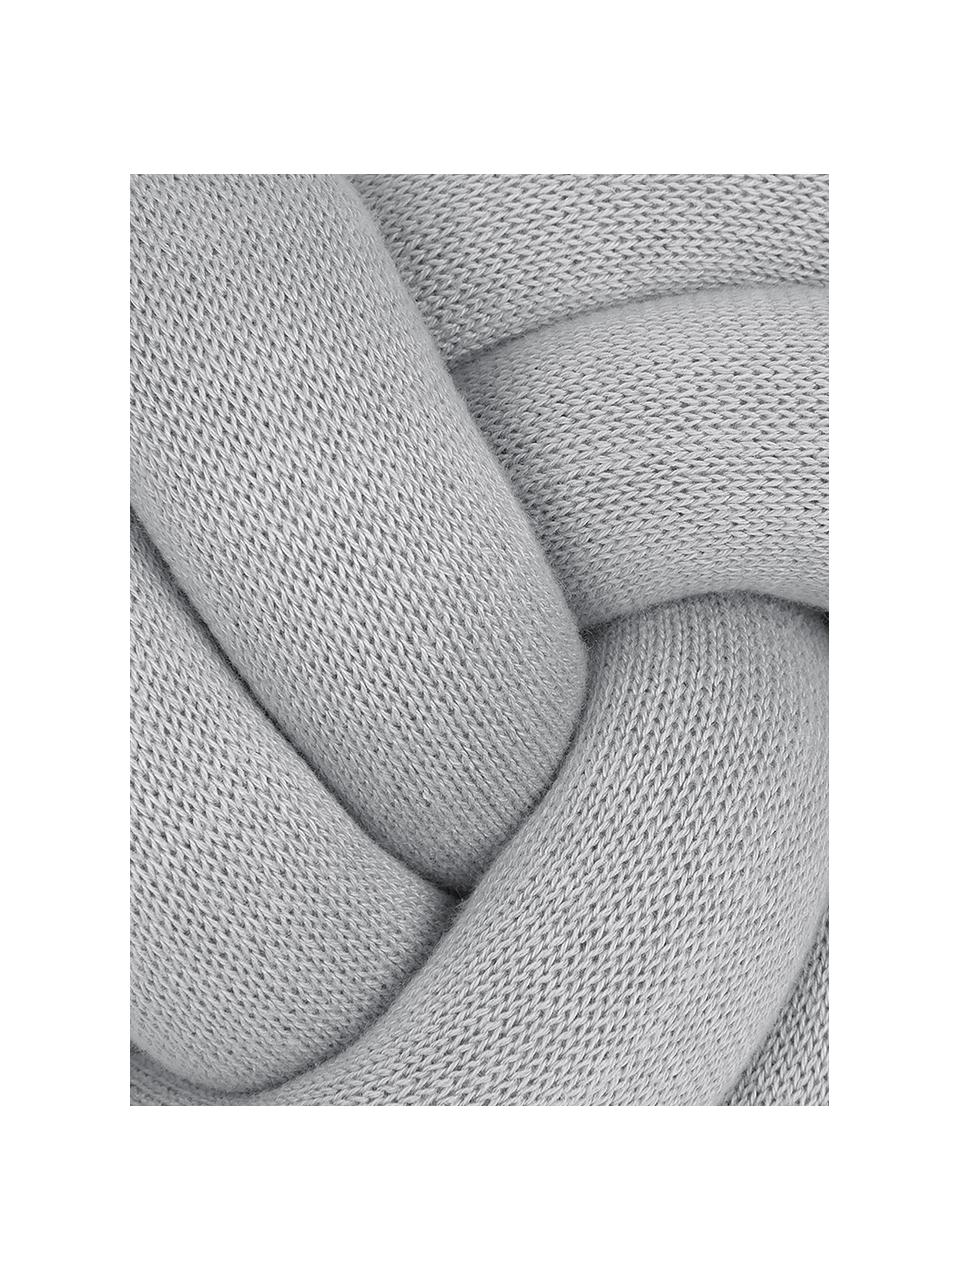 Cuscino annodato grigio chiaro Twist, Grigio chiaro, Ø 30 cm